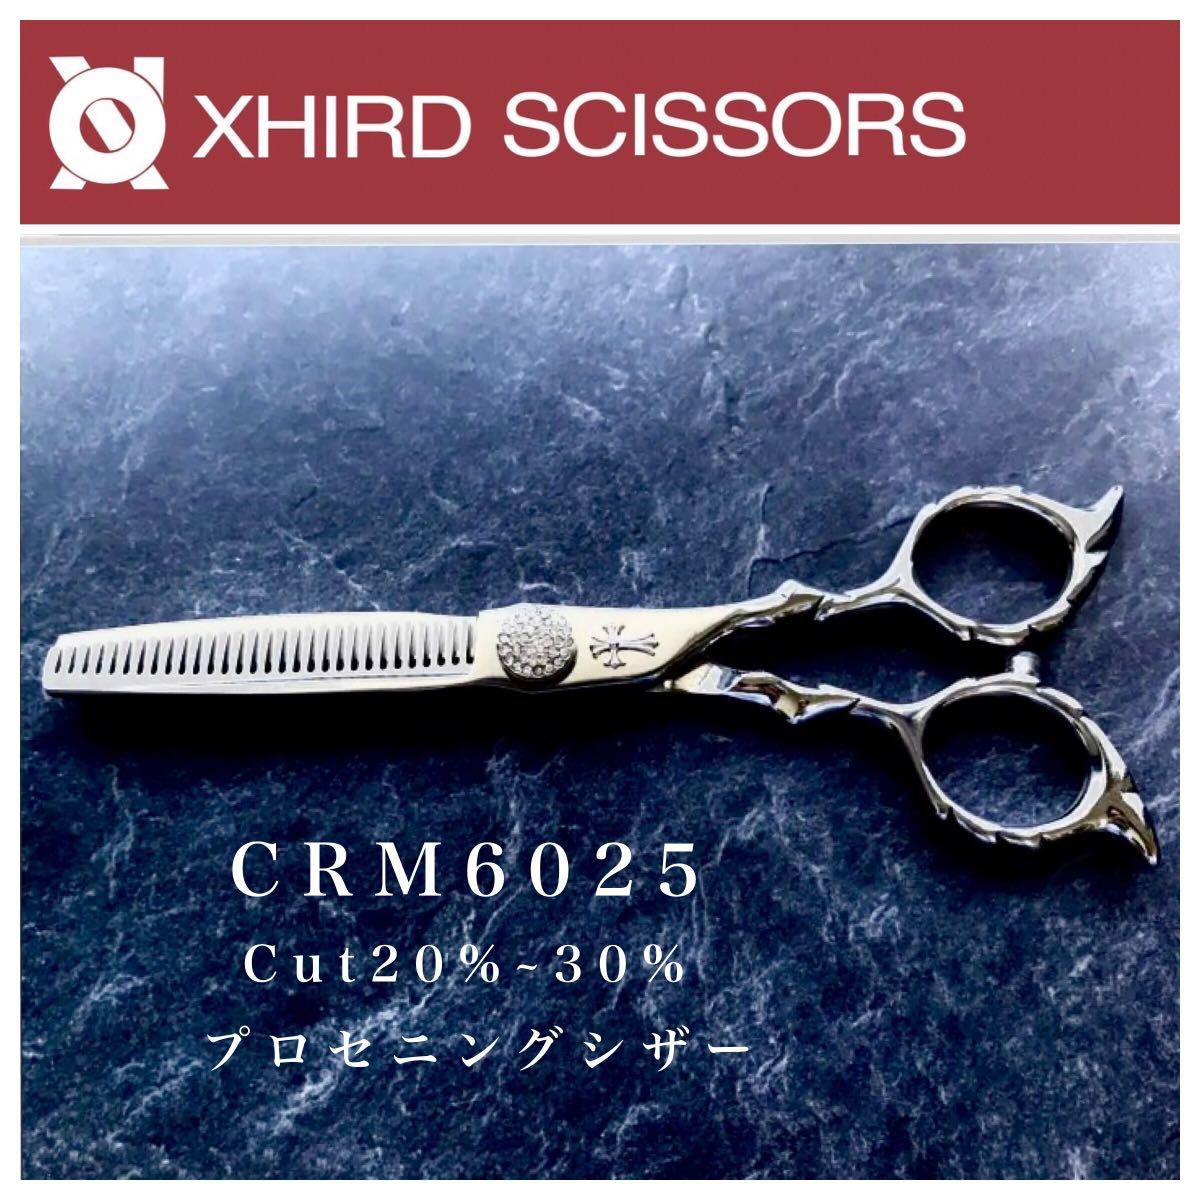 【新品】CRM6025 XHIRD SCISSORS プロセニング【6.0inch】カット率20〜30%  シザー/美容師/ハサミ/人気/安い/プロ用/トリミングシザー